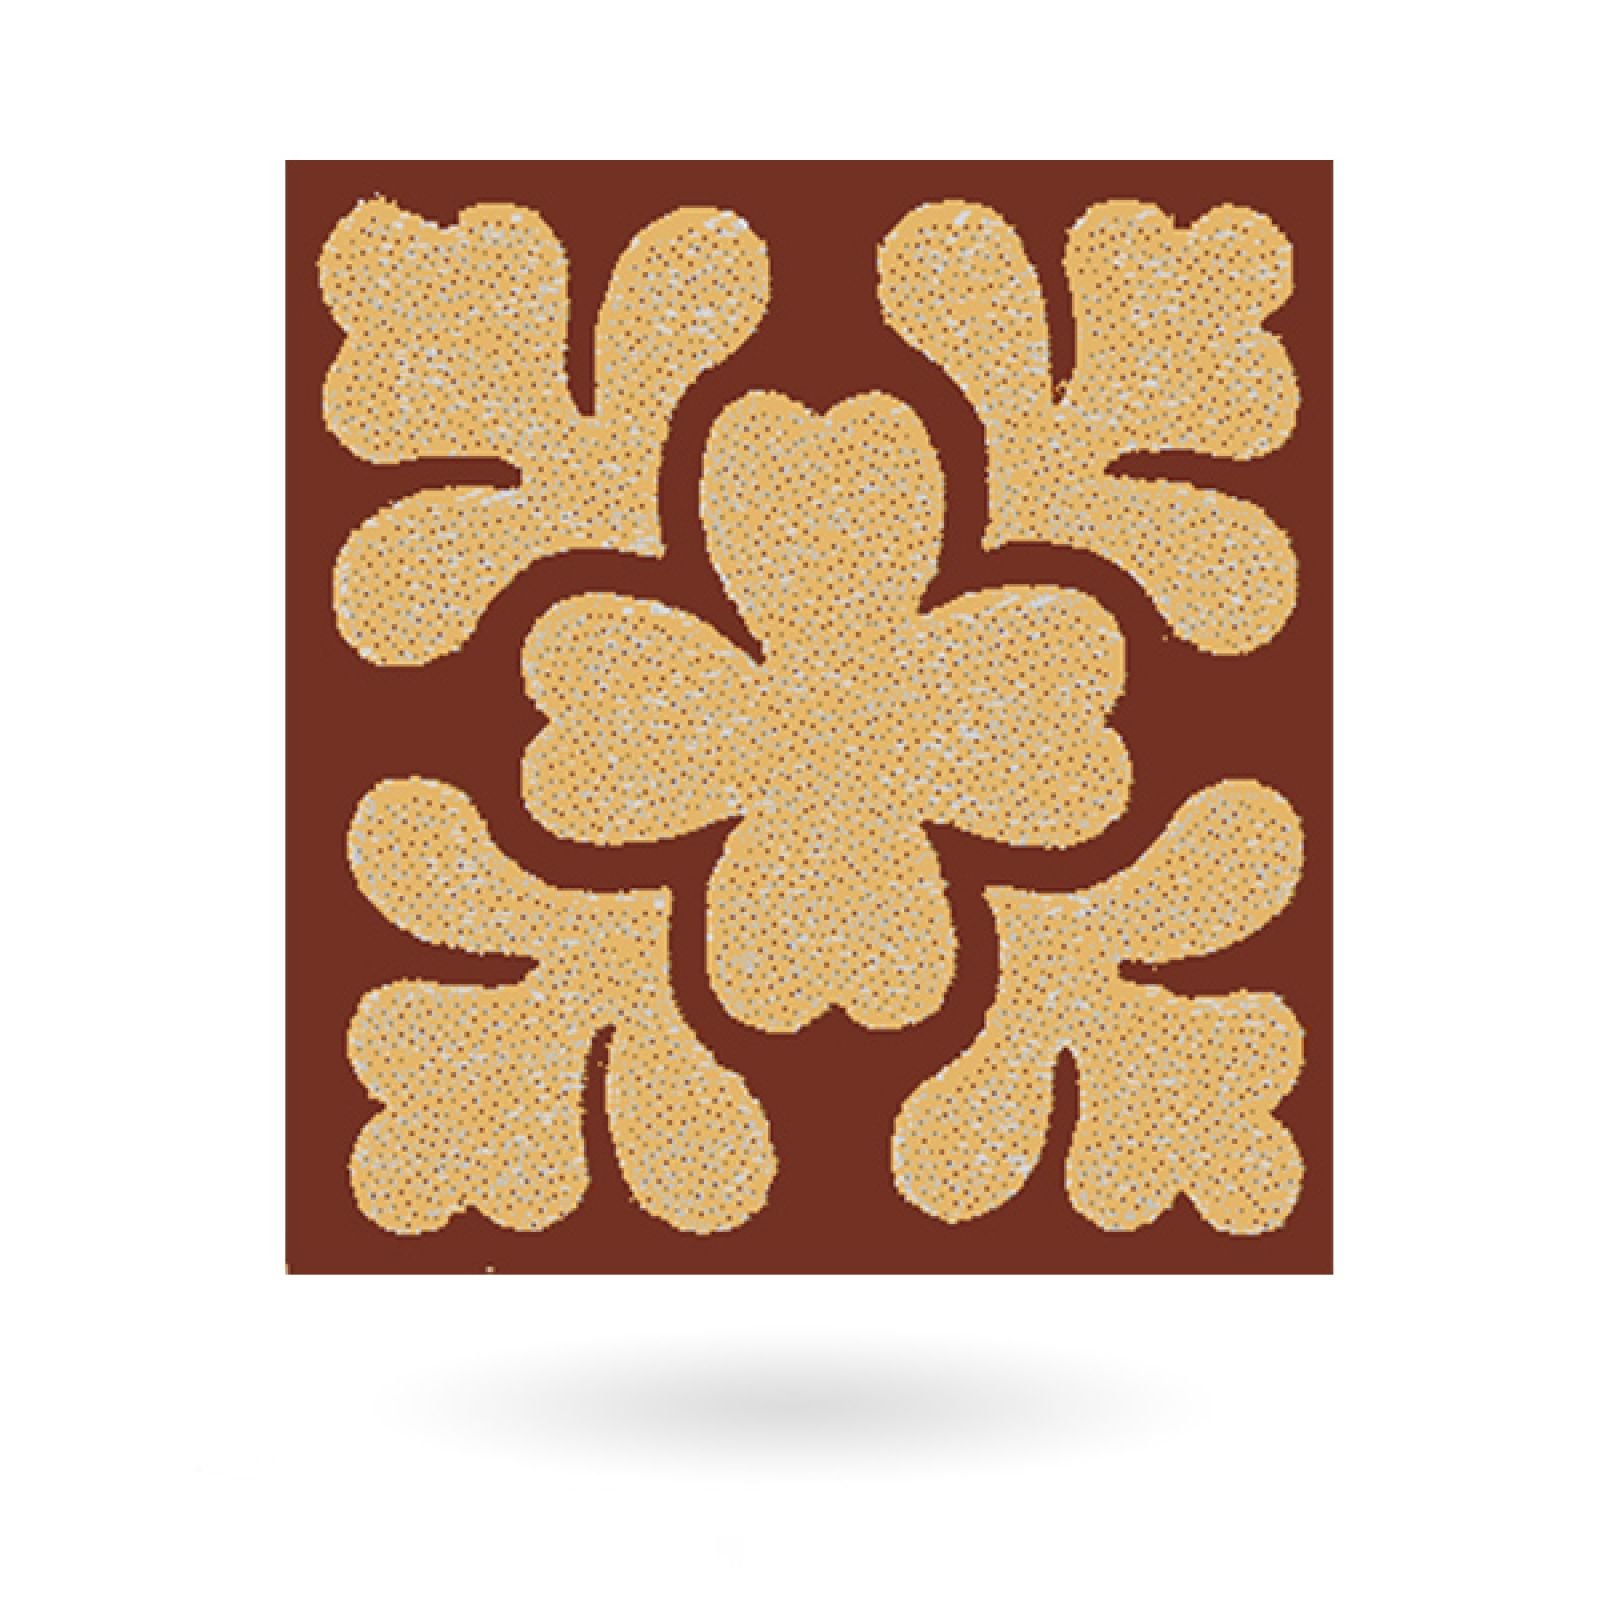 Encaustic 2.25” square tile - design 14